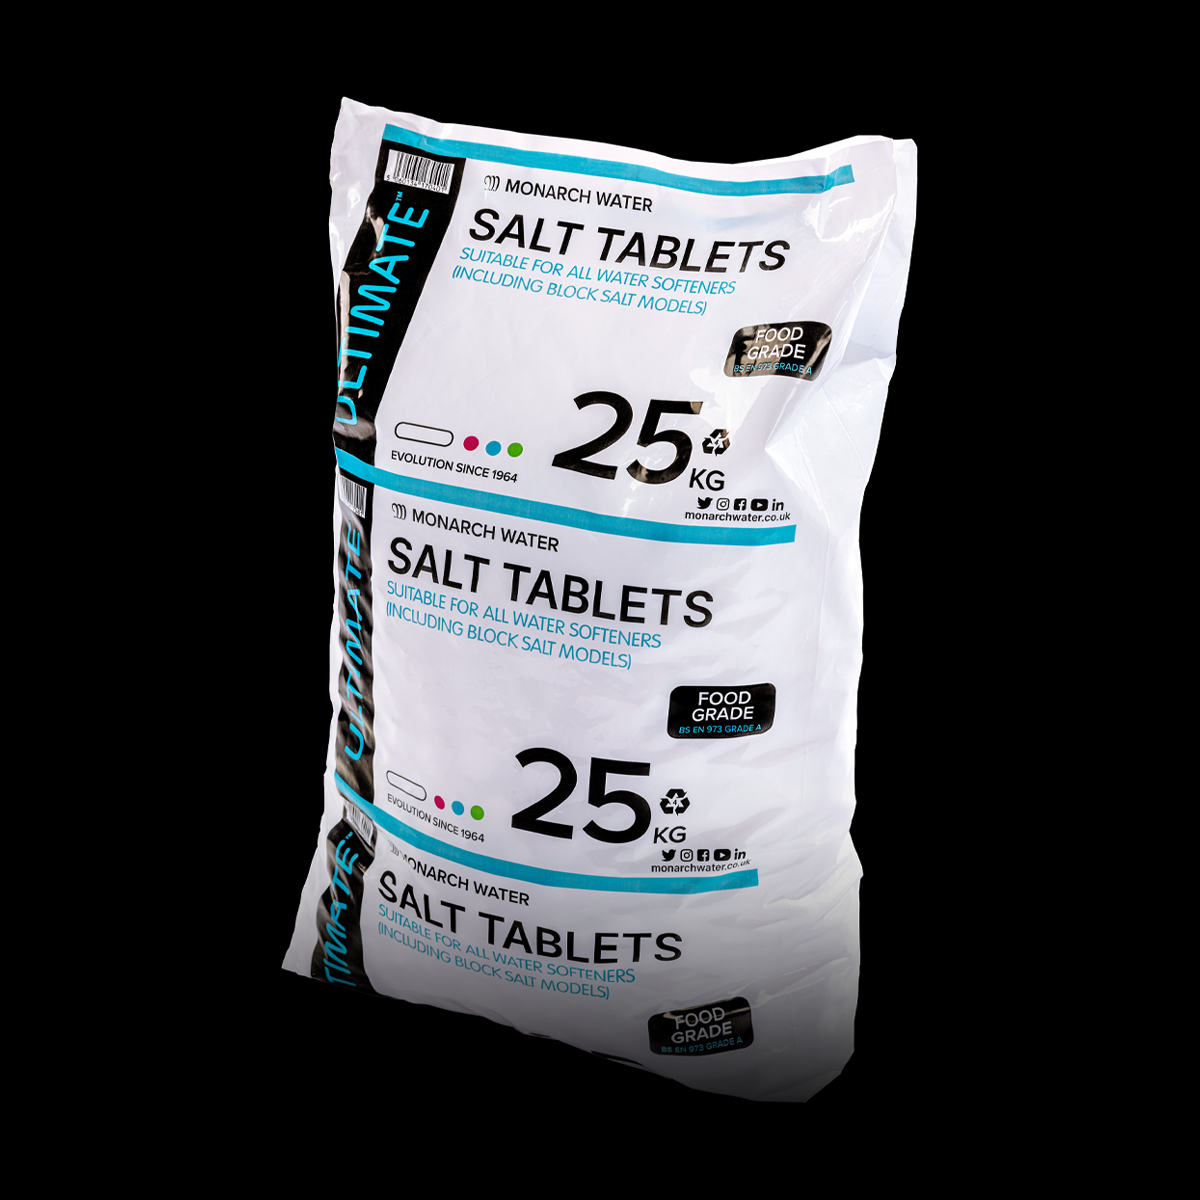 Ultimate Softener Salt - No. 1 choice for salt